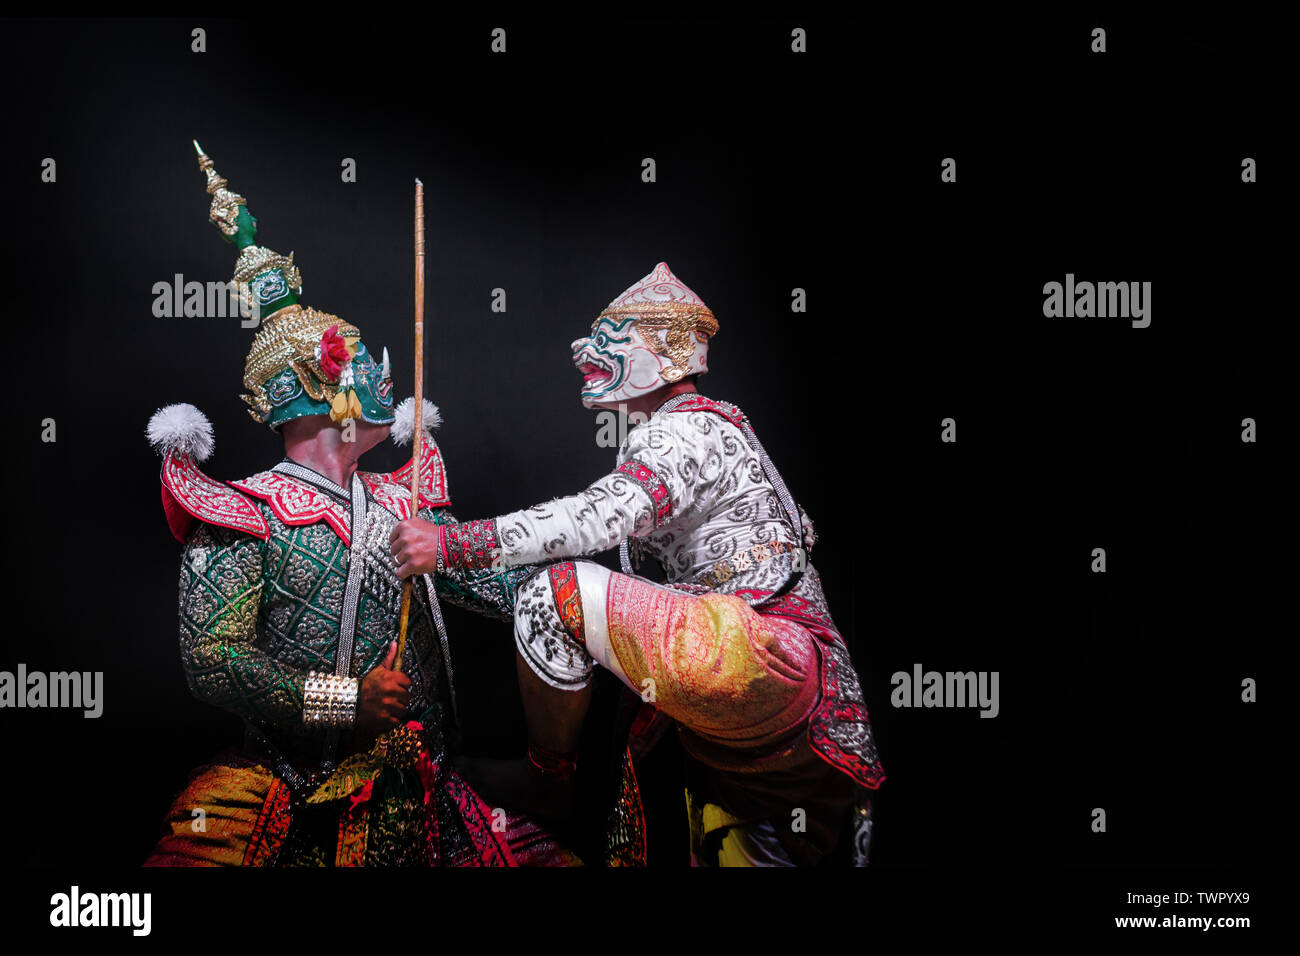 Hanuman Affe und riesigen schaukampf Schauspieler in Ramayana Leistung auf Grafik Thailand Stoff Muster Hintergrund. Asien Kunst zeigen auf Hanuman Schauspieler Punkt ac Stockfoto